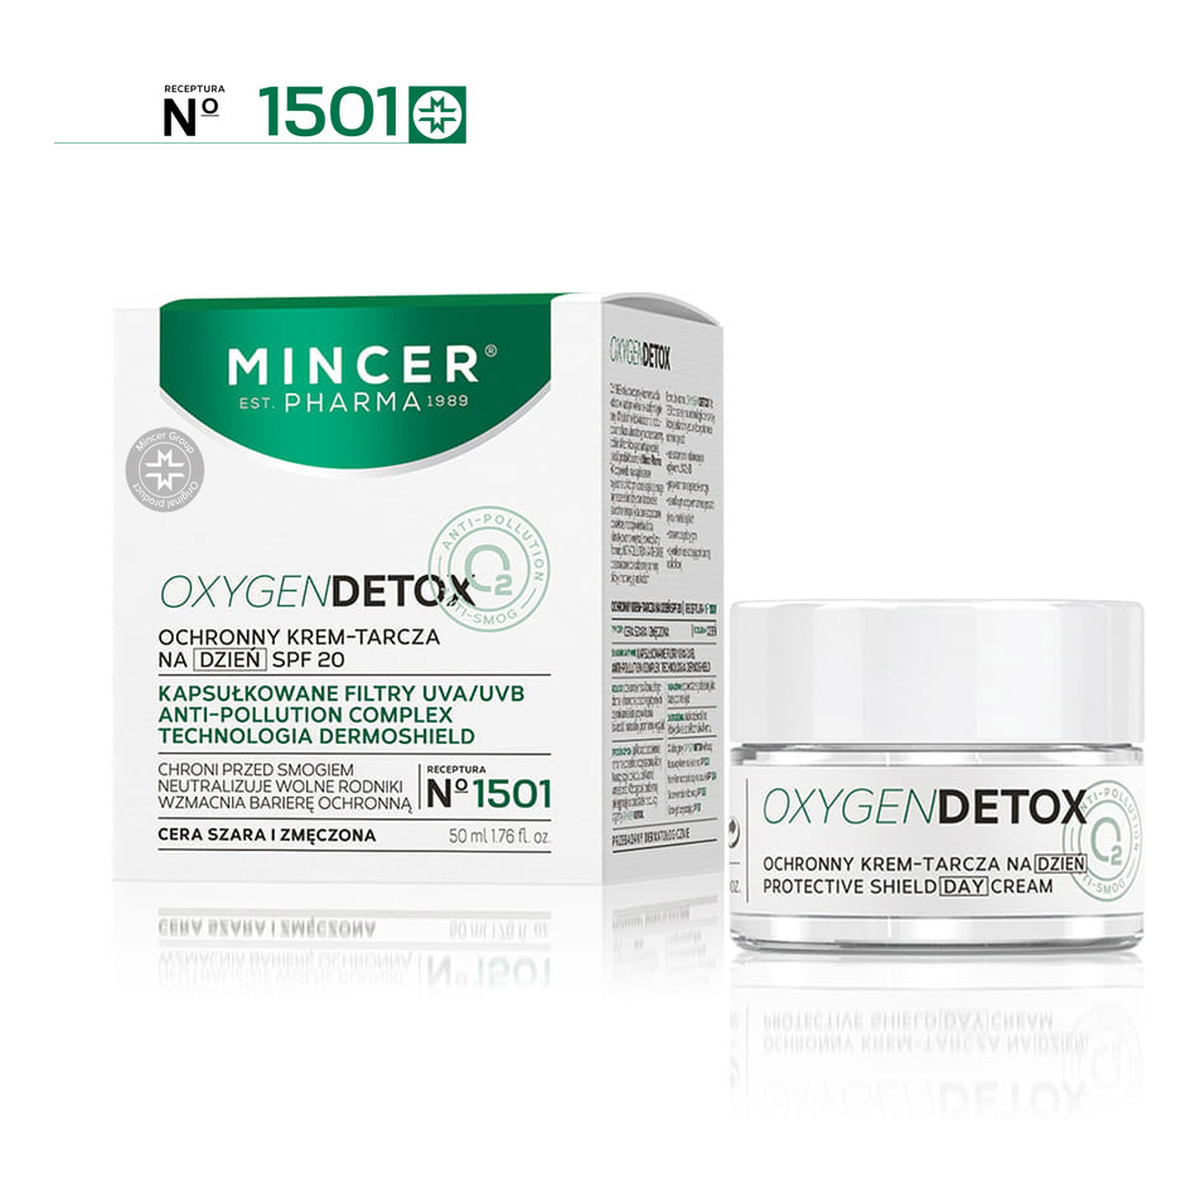 Mincer Pharma Oxygen Detox Ochronny krem-tarcza na dzień SPF20 No 1501 50ml